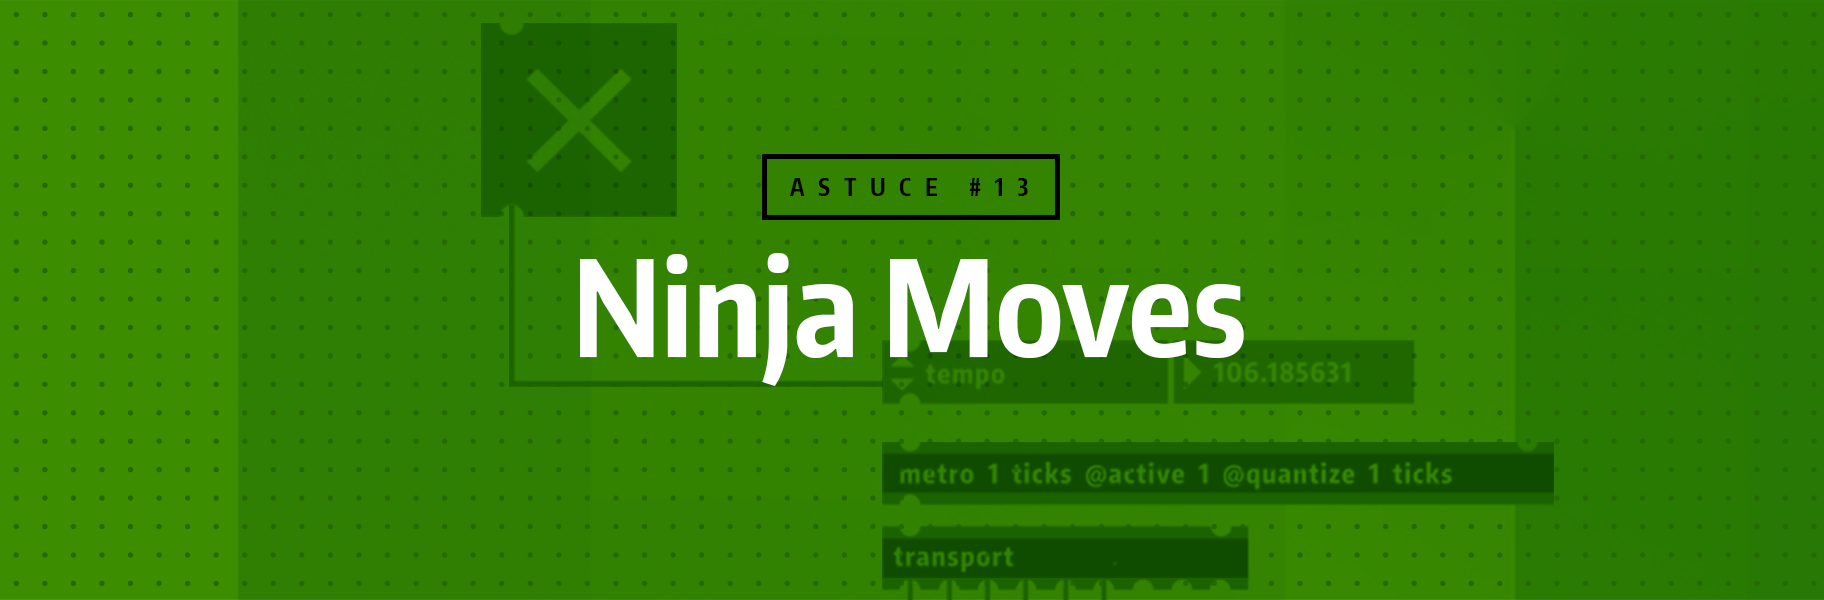 Astuce rapide #13 - Ninja Moves